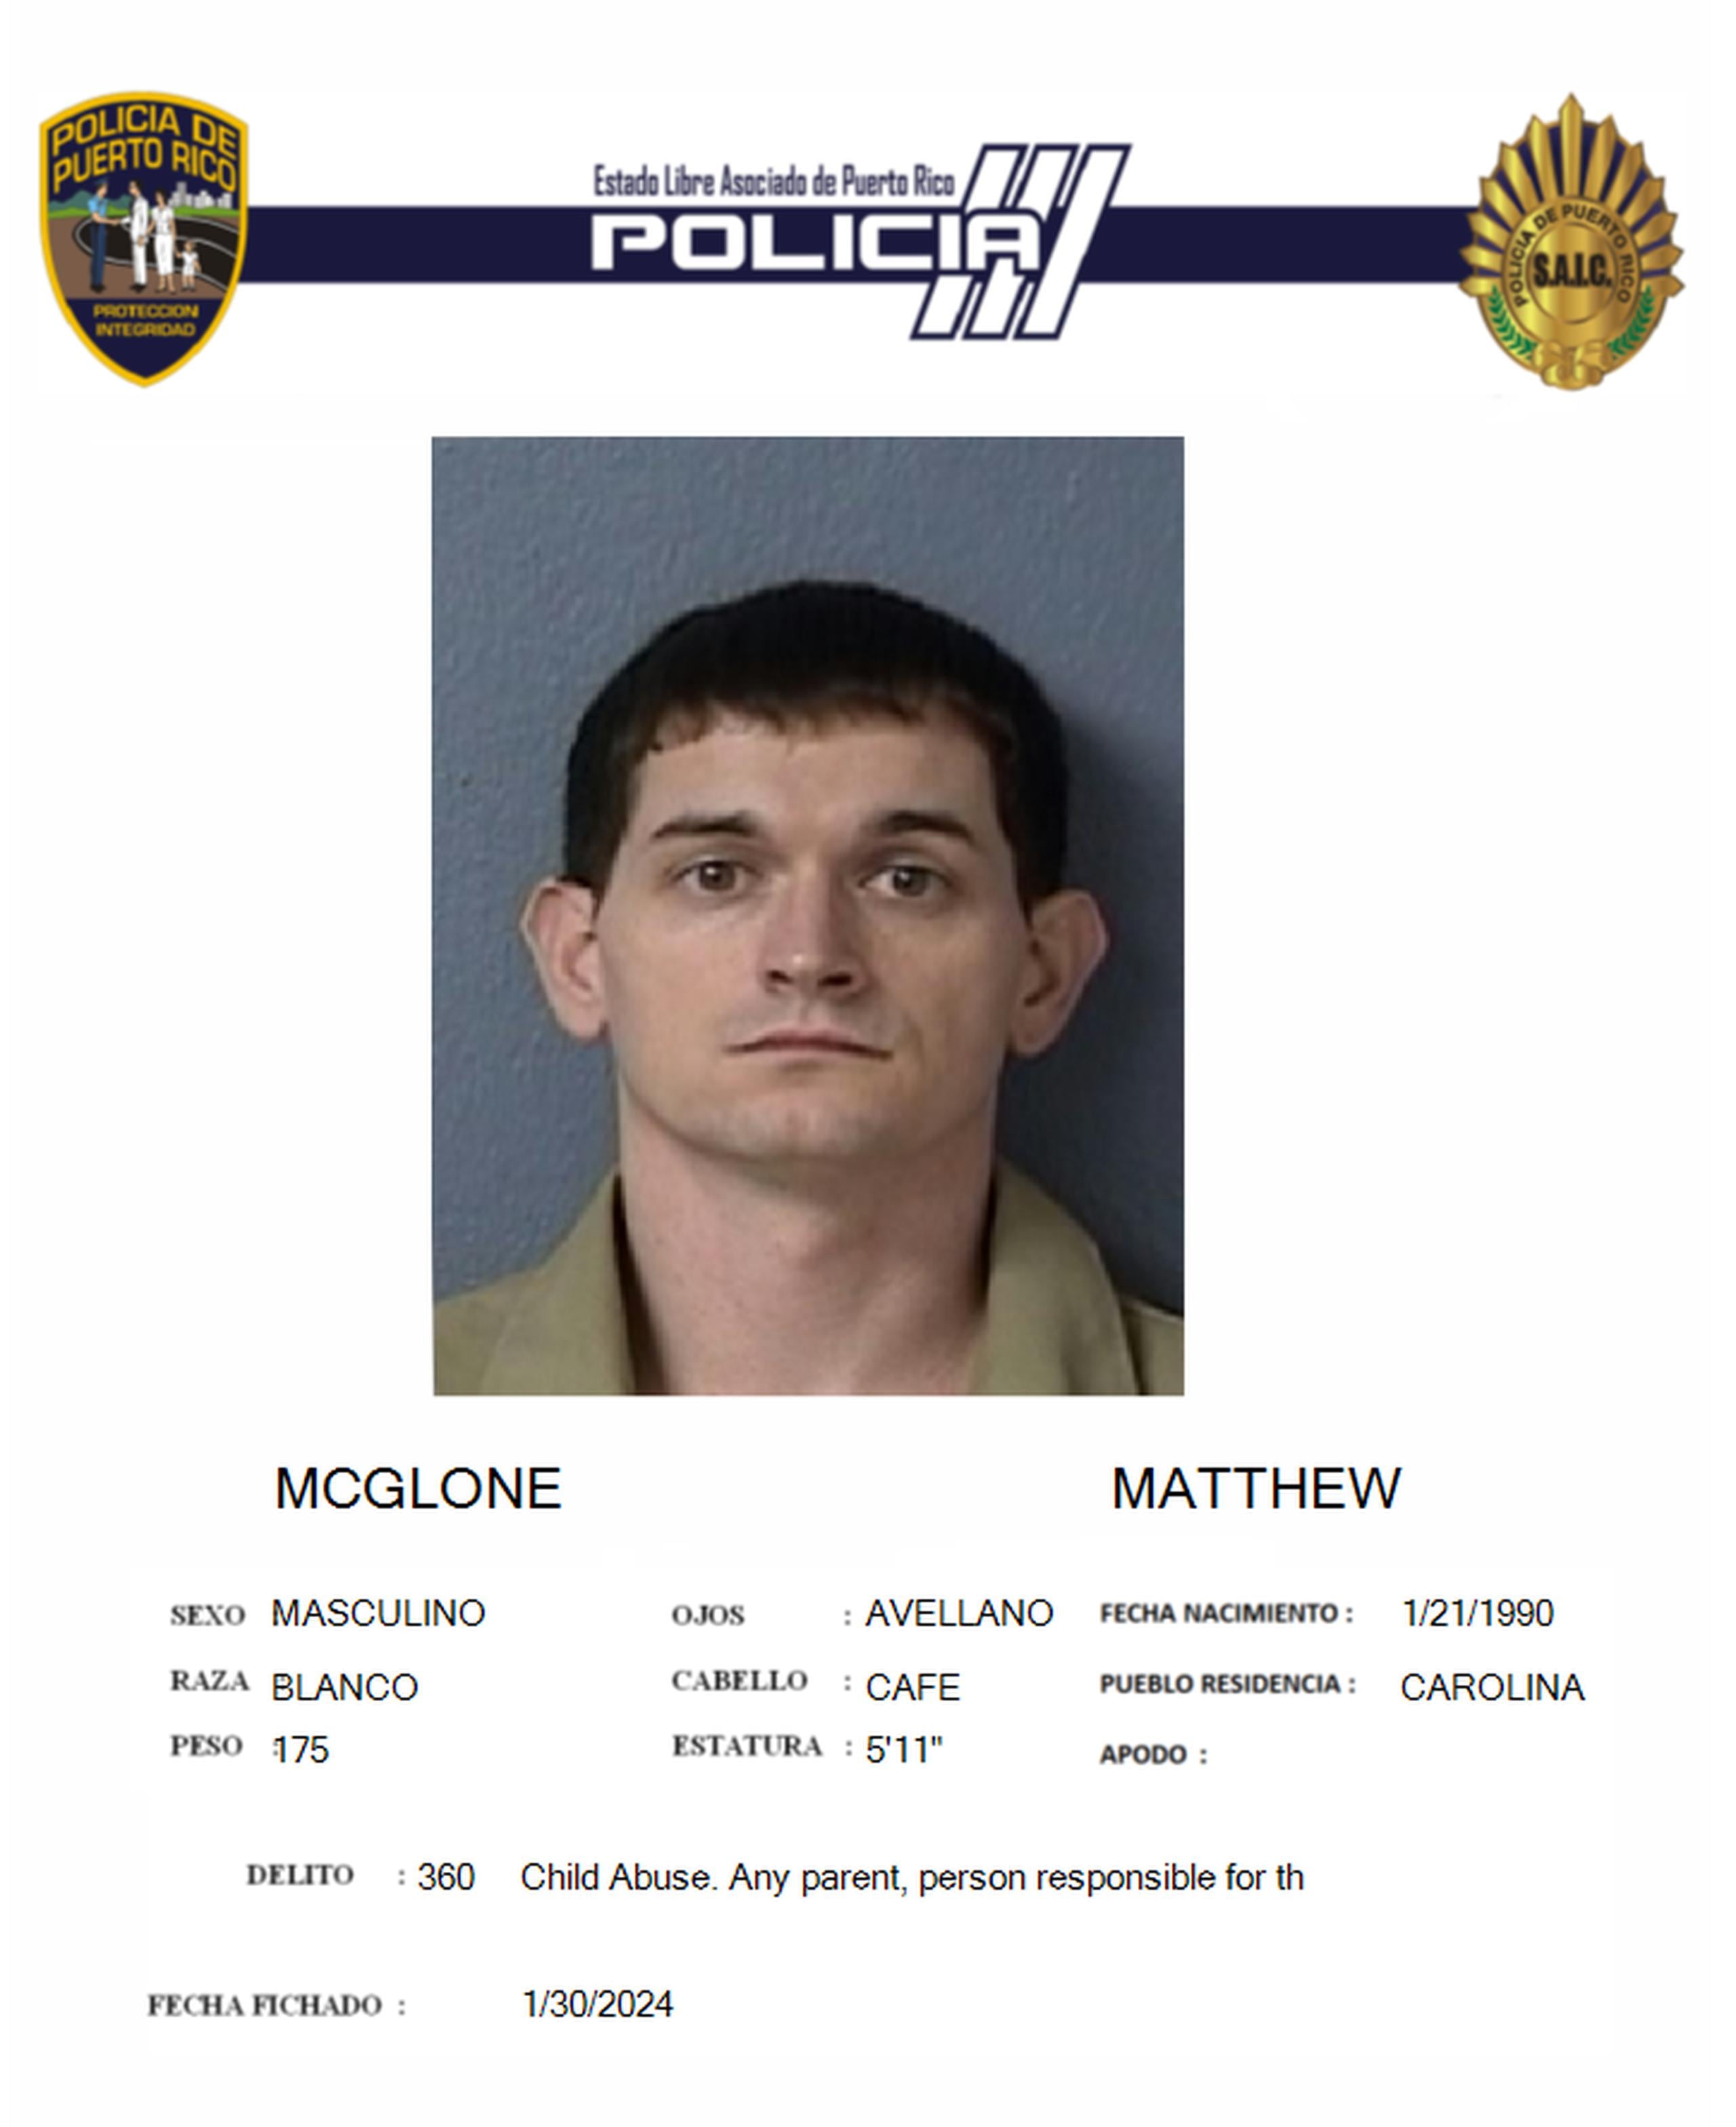 Matthew McGlone enfrenta cargos por maltrato de menores y distribución de material obsceno